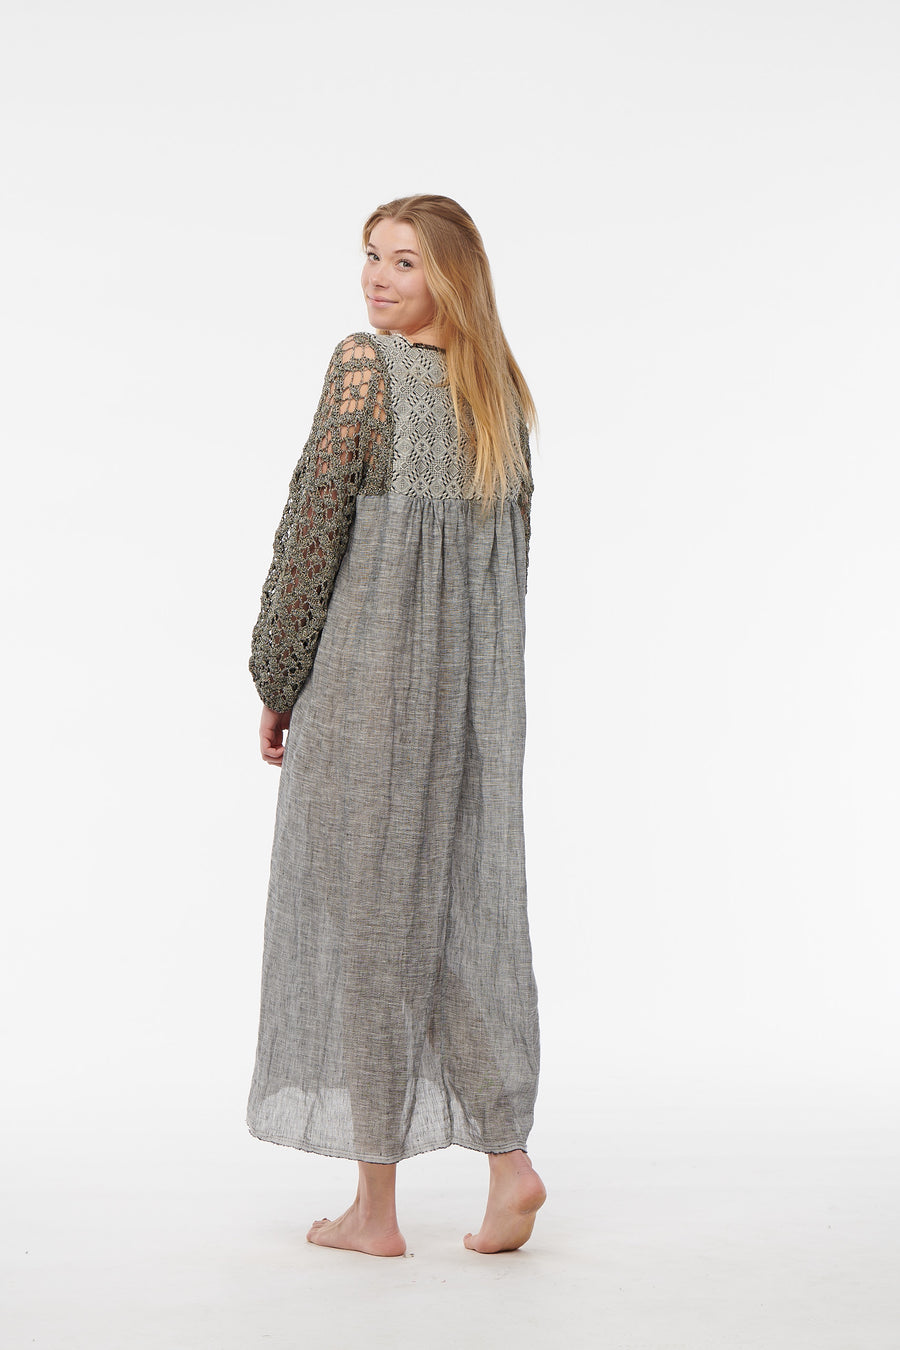 Nina Leuca, Long Dress with Grey Lurex Knit Sleeves